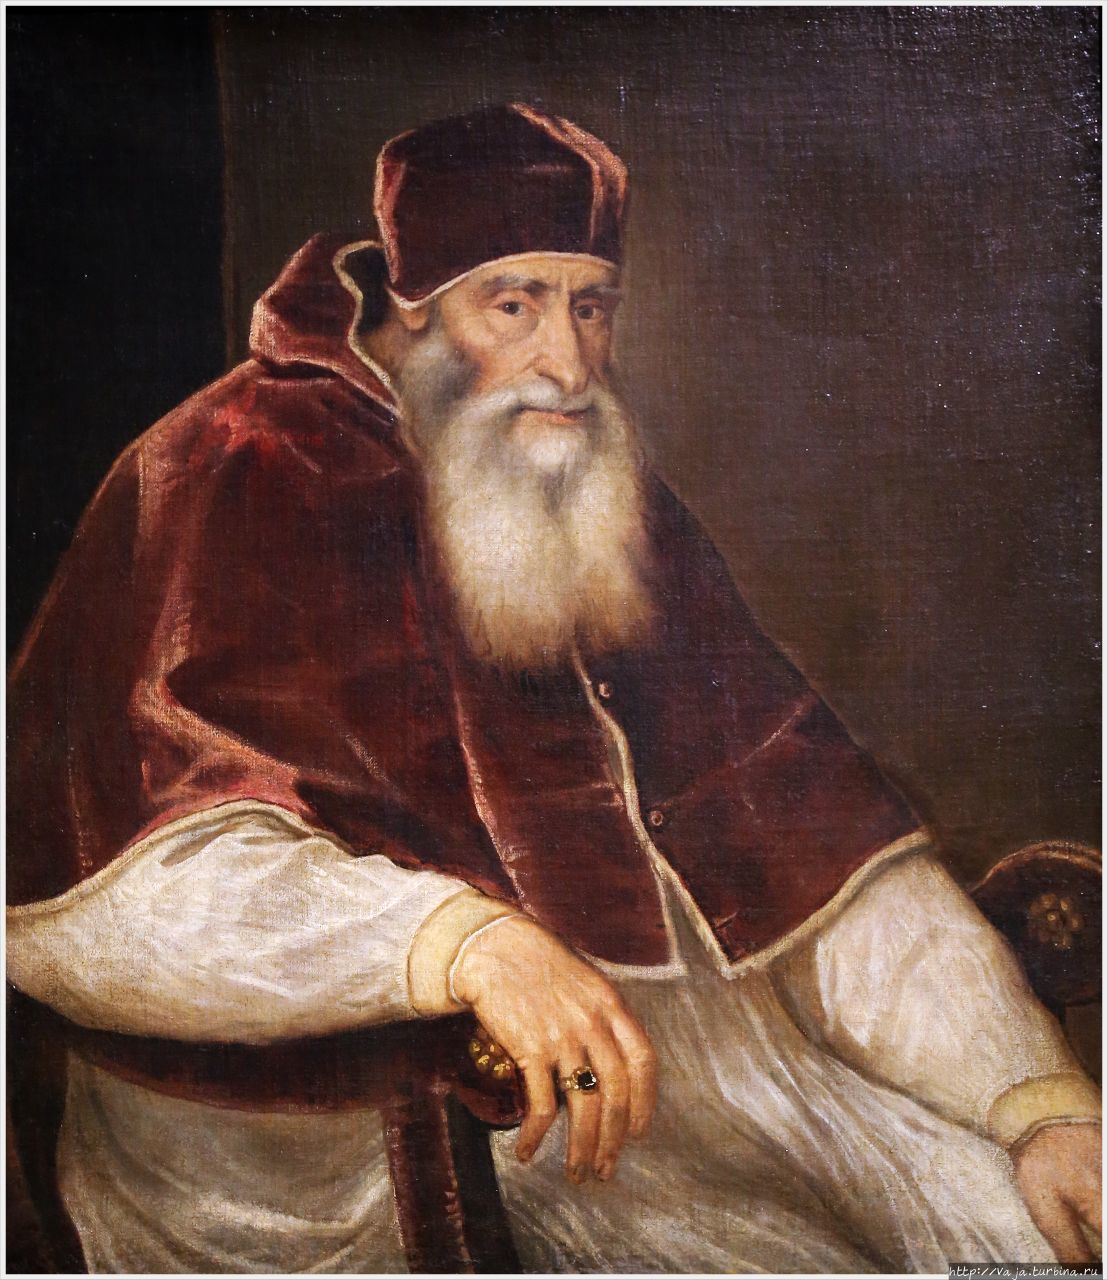 Тициан. Портрет папы римского Юлия второго Вена, Австрия